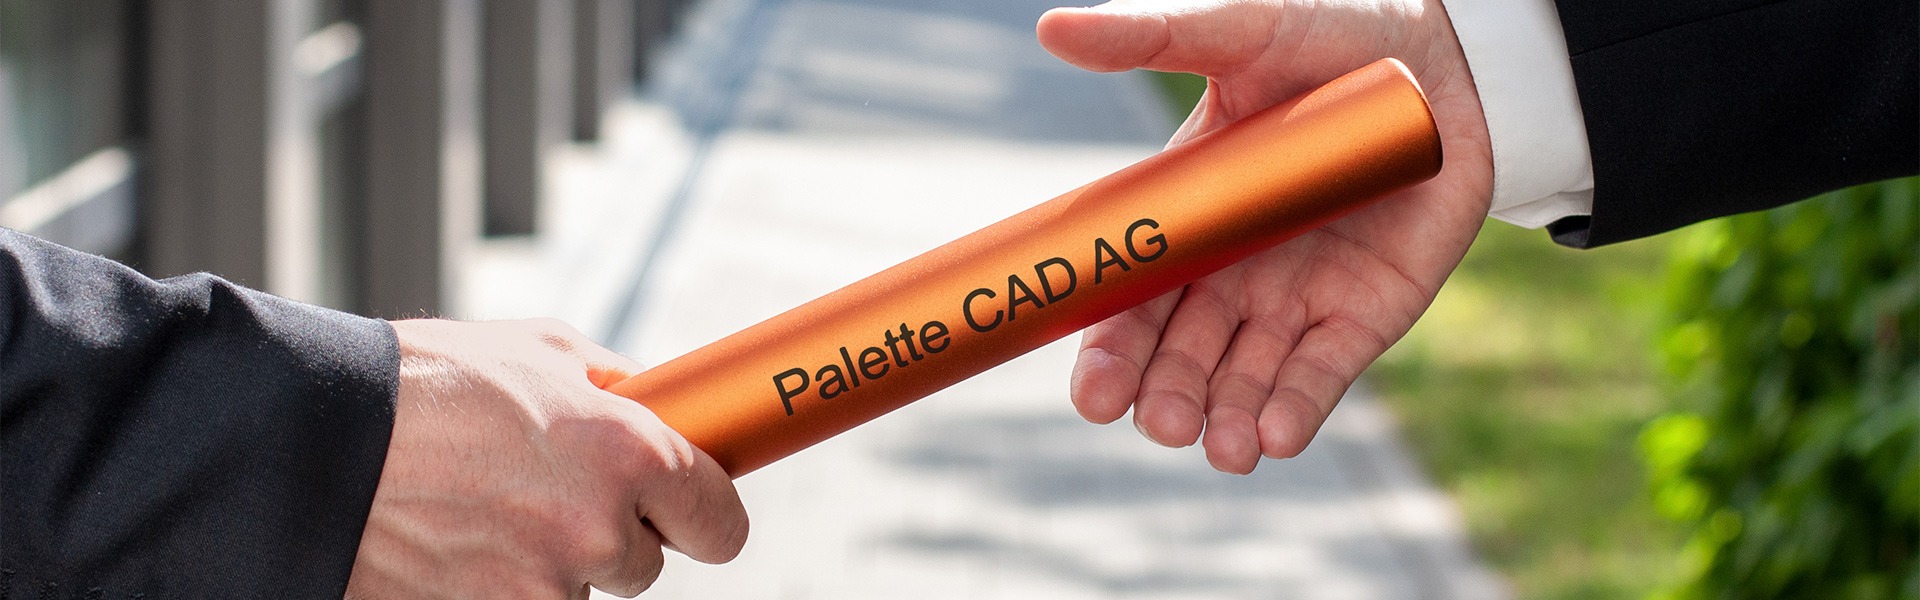 Staffelstabübergabe – mit der Umwandlung von der GmbH zur AG leitet Palette CAD das nächste Kapitel der Firmengeschichte ein